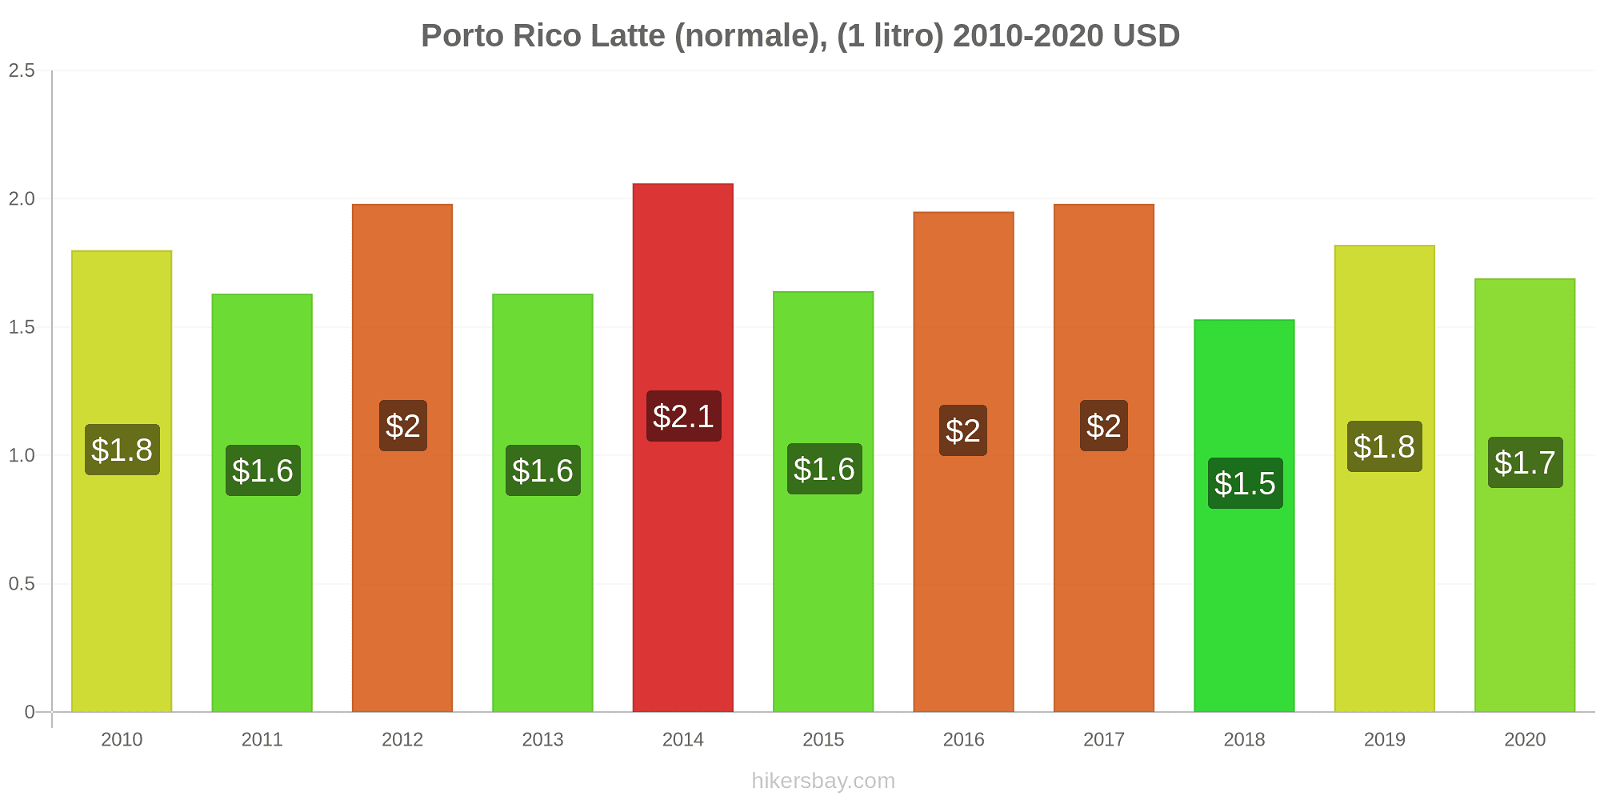 Porto Rico variazioni di prezzo Latte (1 litro) hikersbay.com